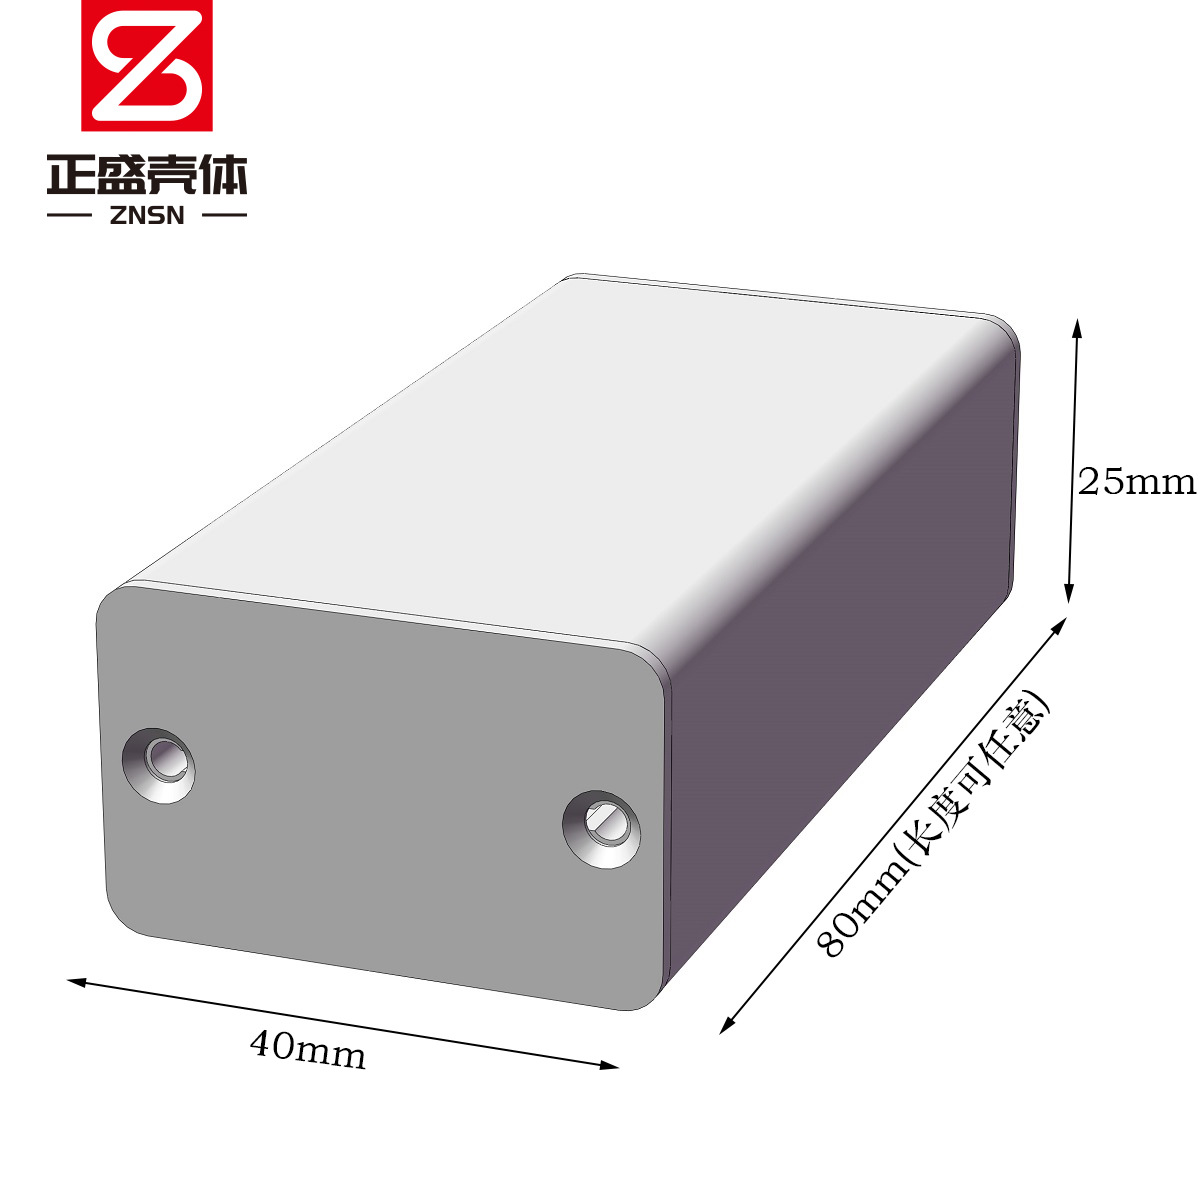 40x25铝合金壳体 铝型材外壳 电源锂电池铝壳 防水仪表机壳铝8027